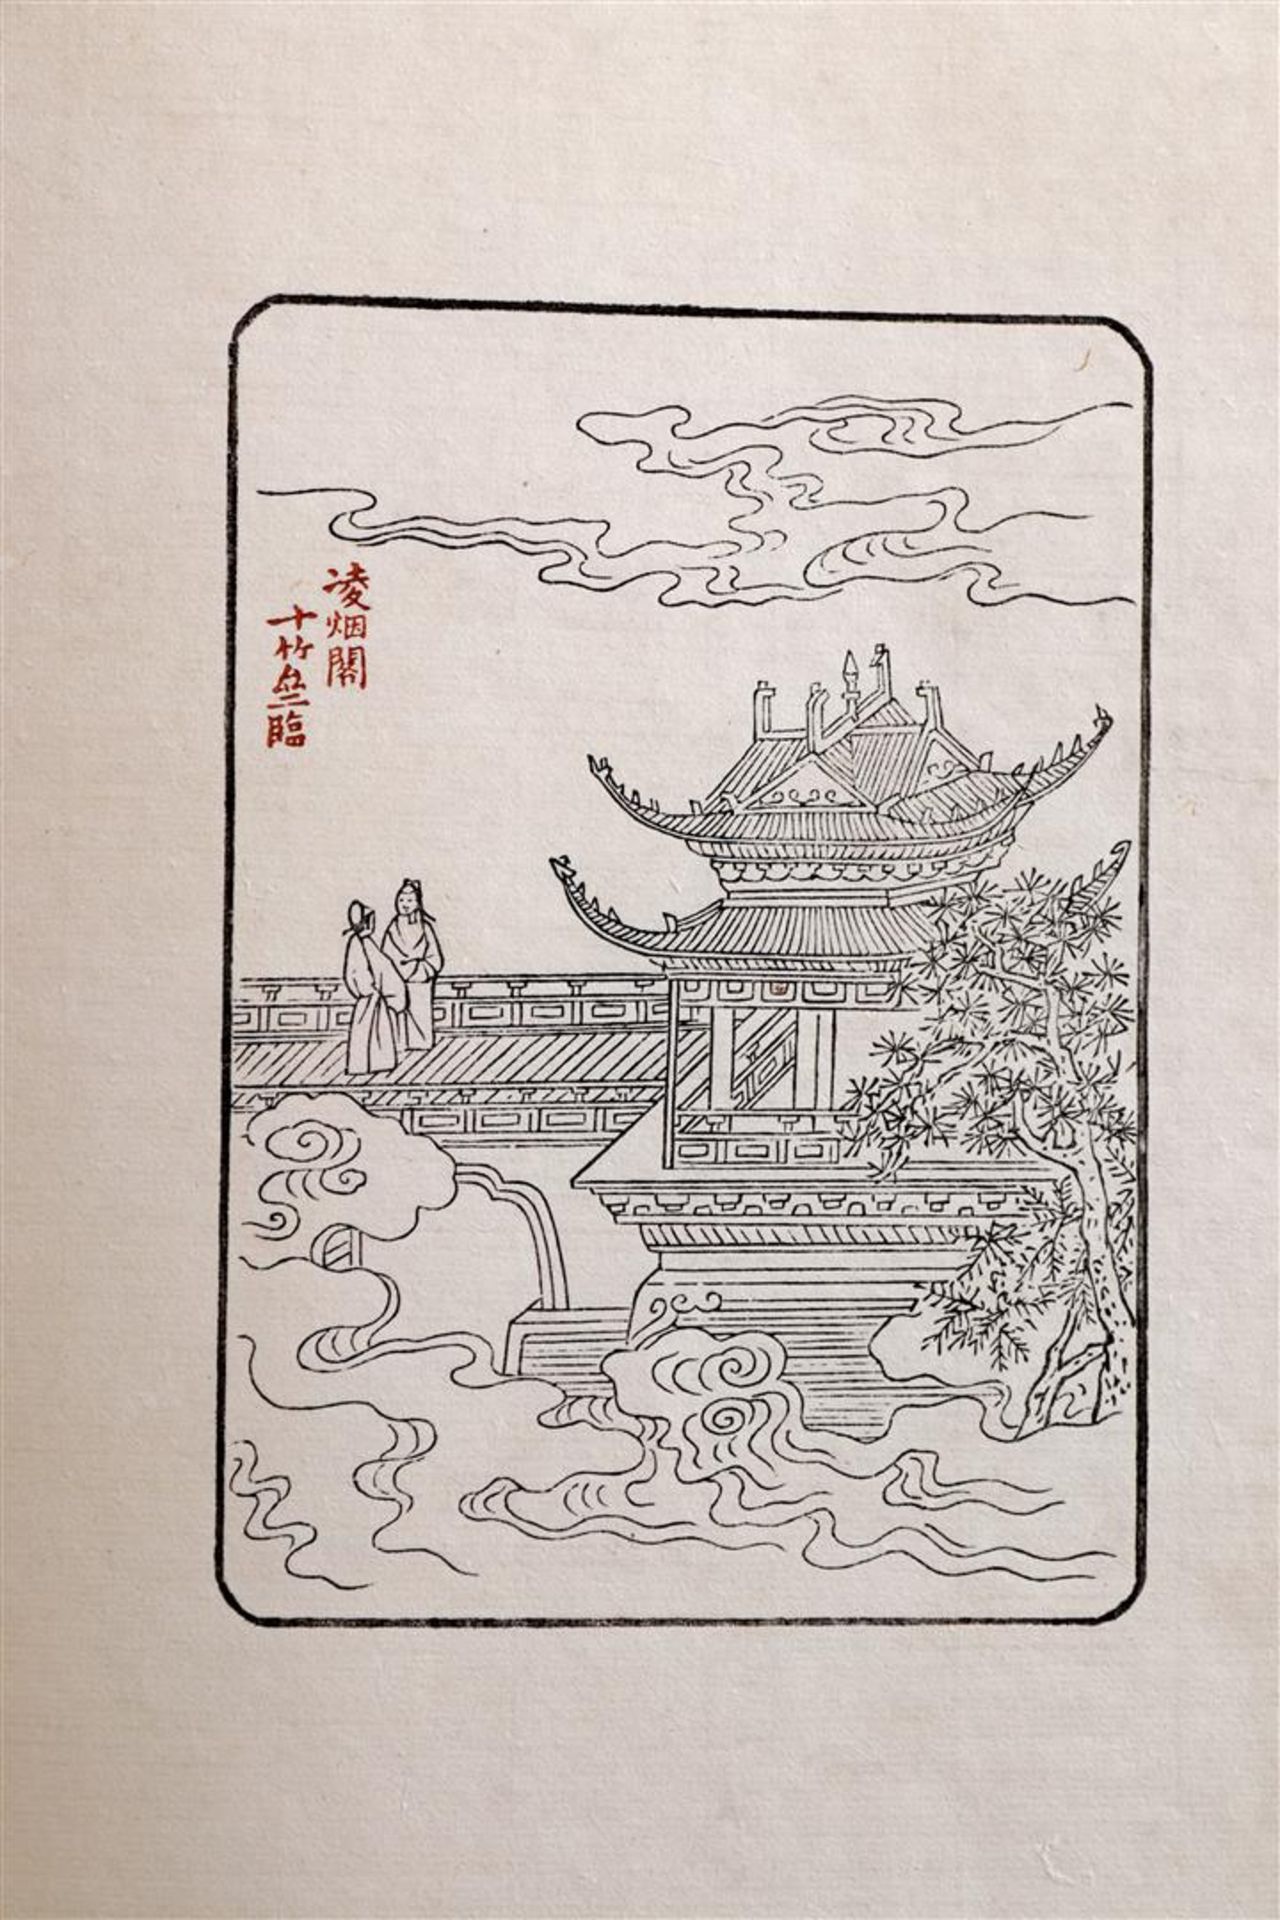 The Ten Bamboo Studio Catalogue, Shizhuzhai Jianpu - Image 12 of 13